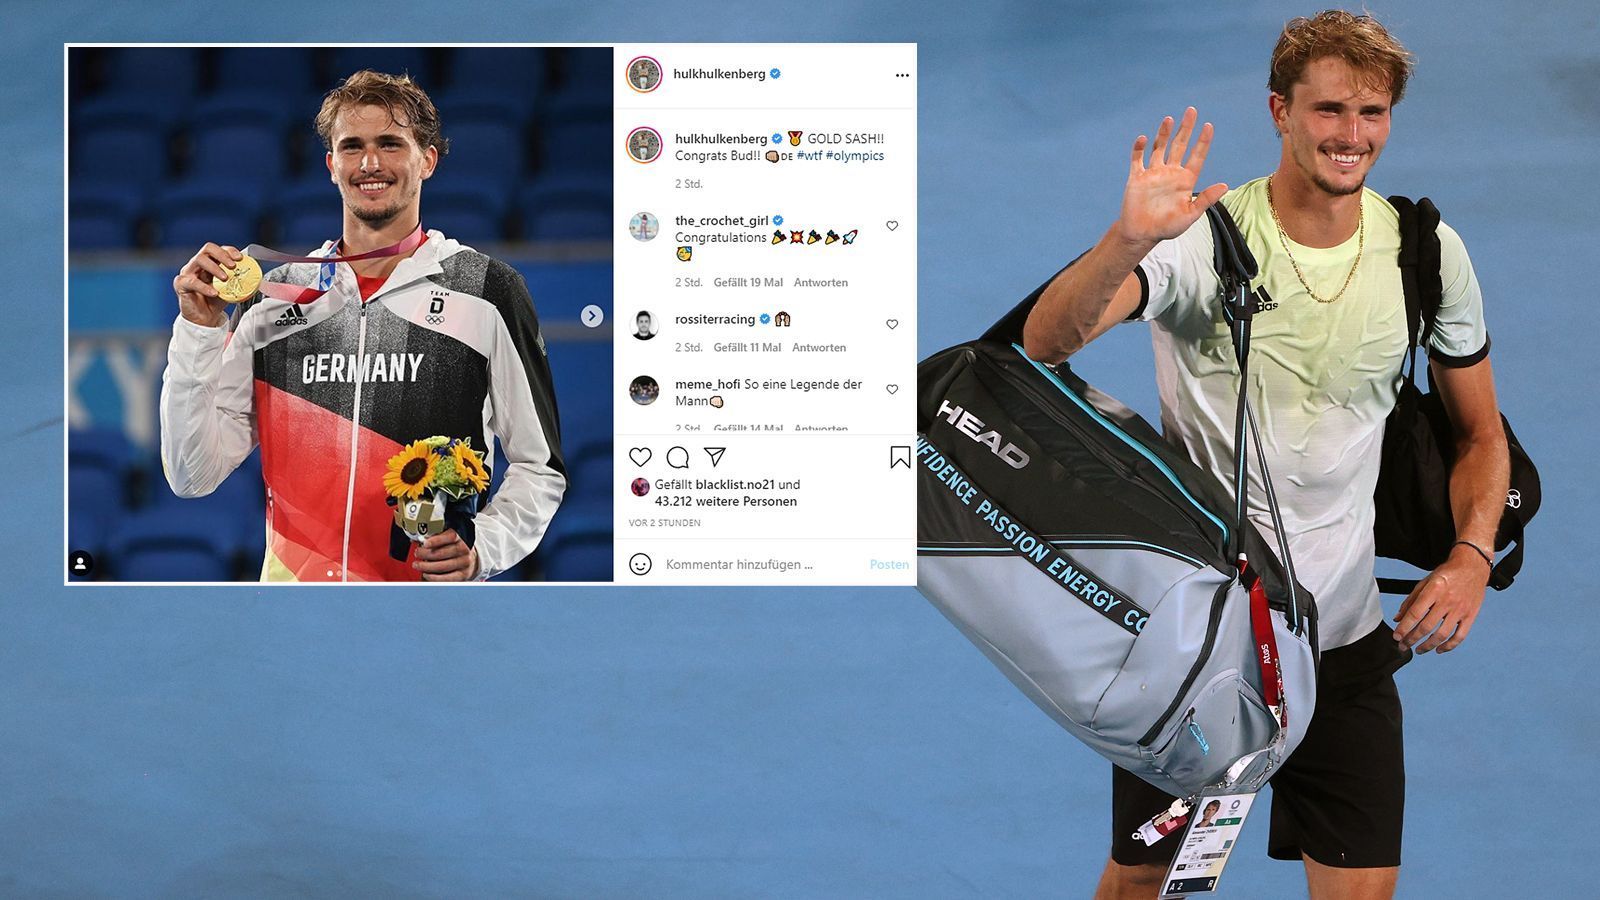 
                <strong>Nico Hülkenberg</strong><br>
                Ex-Formel-1-Pilot Nico Hülkenberg freut sich mit dem frischgebackenen Olympiasieger Zverev. "GOLD SASH!! Congrats Bud", schrieb der 33-Jährige auf seinem Instagram-Account. 
              